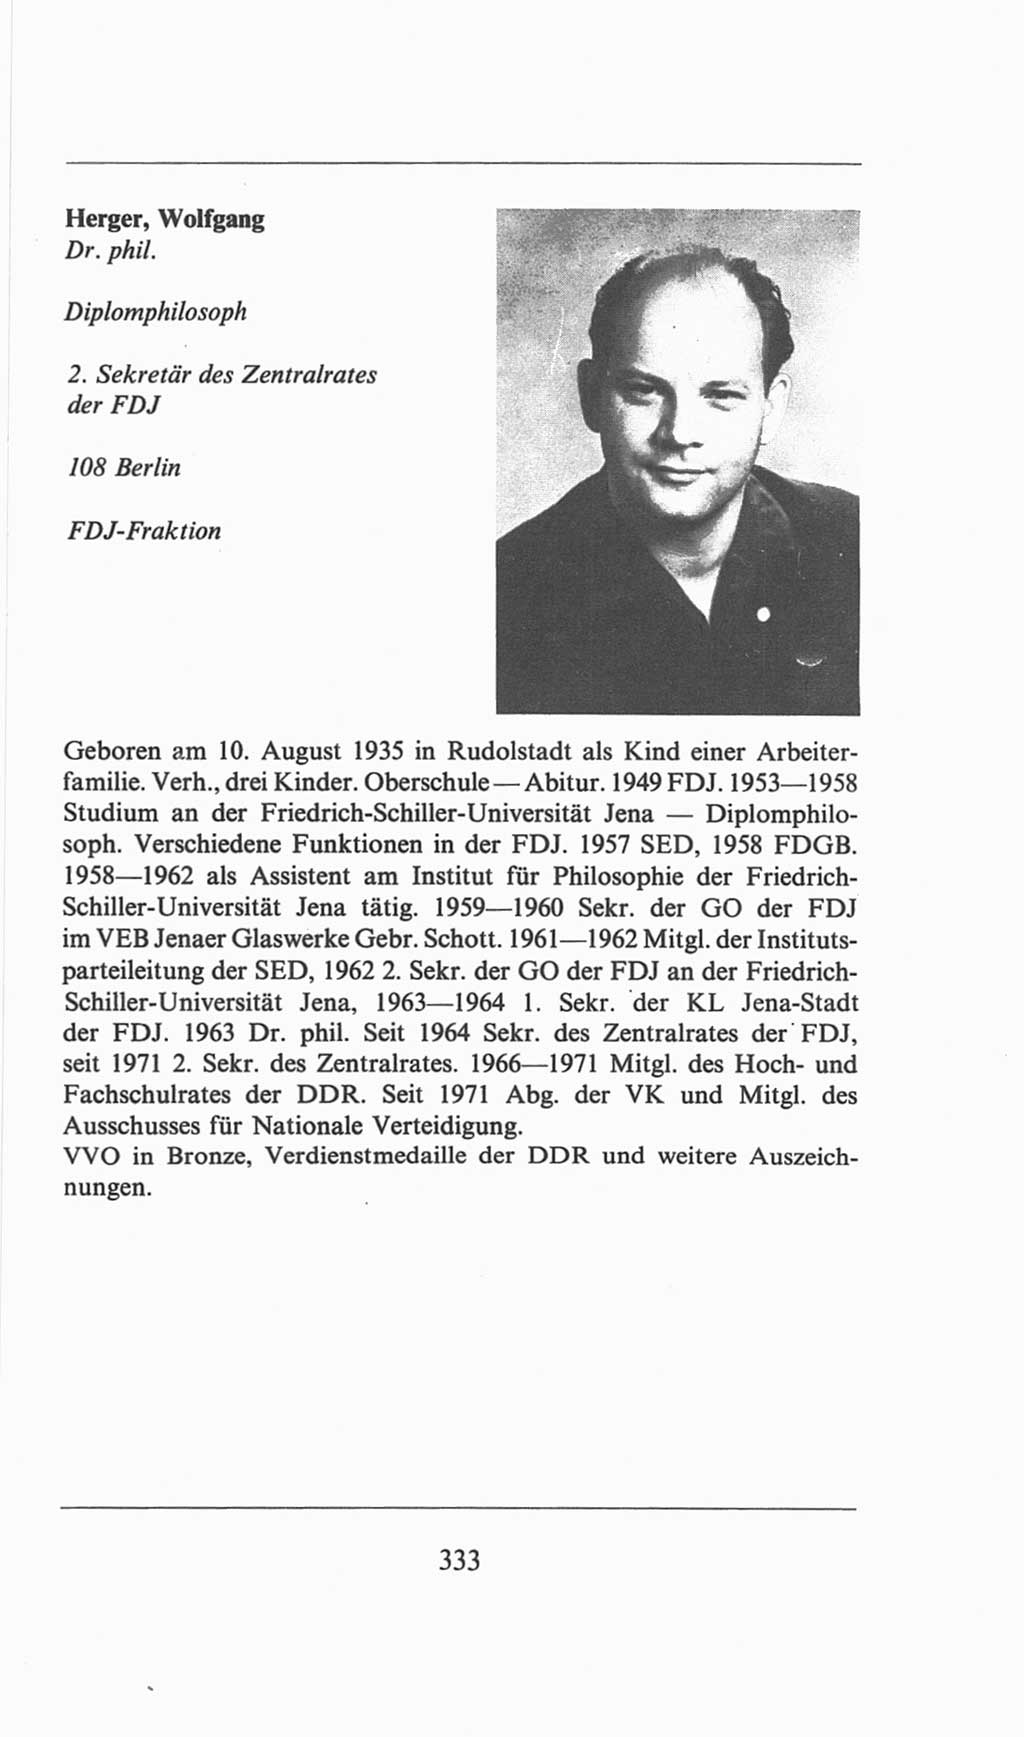 Volkskammer (VK) der Deutschen Demokratischen Republik (DDR), 6. Wahlperiode 1971-1976, Seite 333 (VK. DDR 6. WP. 1971-1976, S. 333)